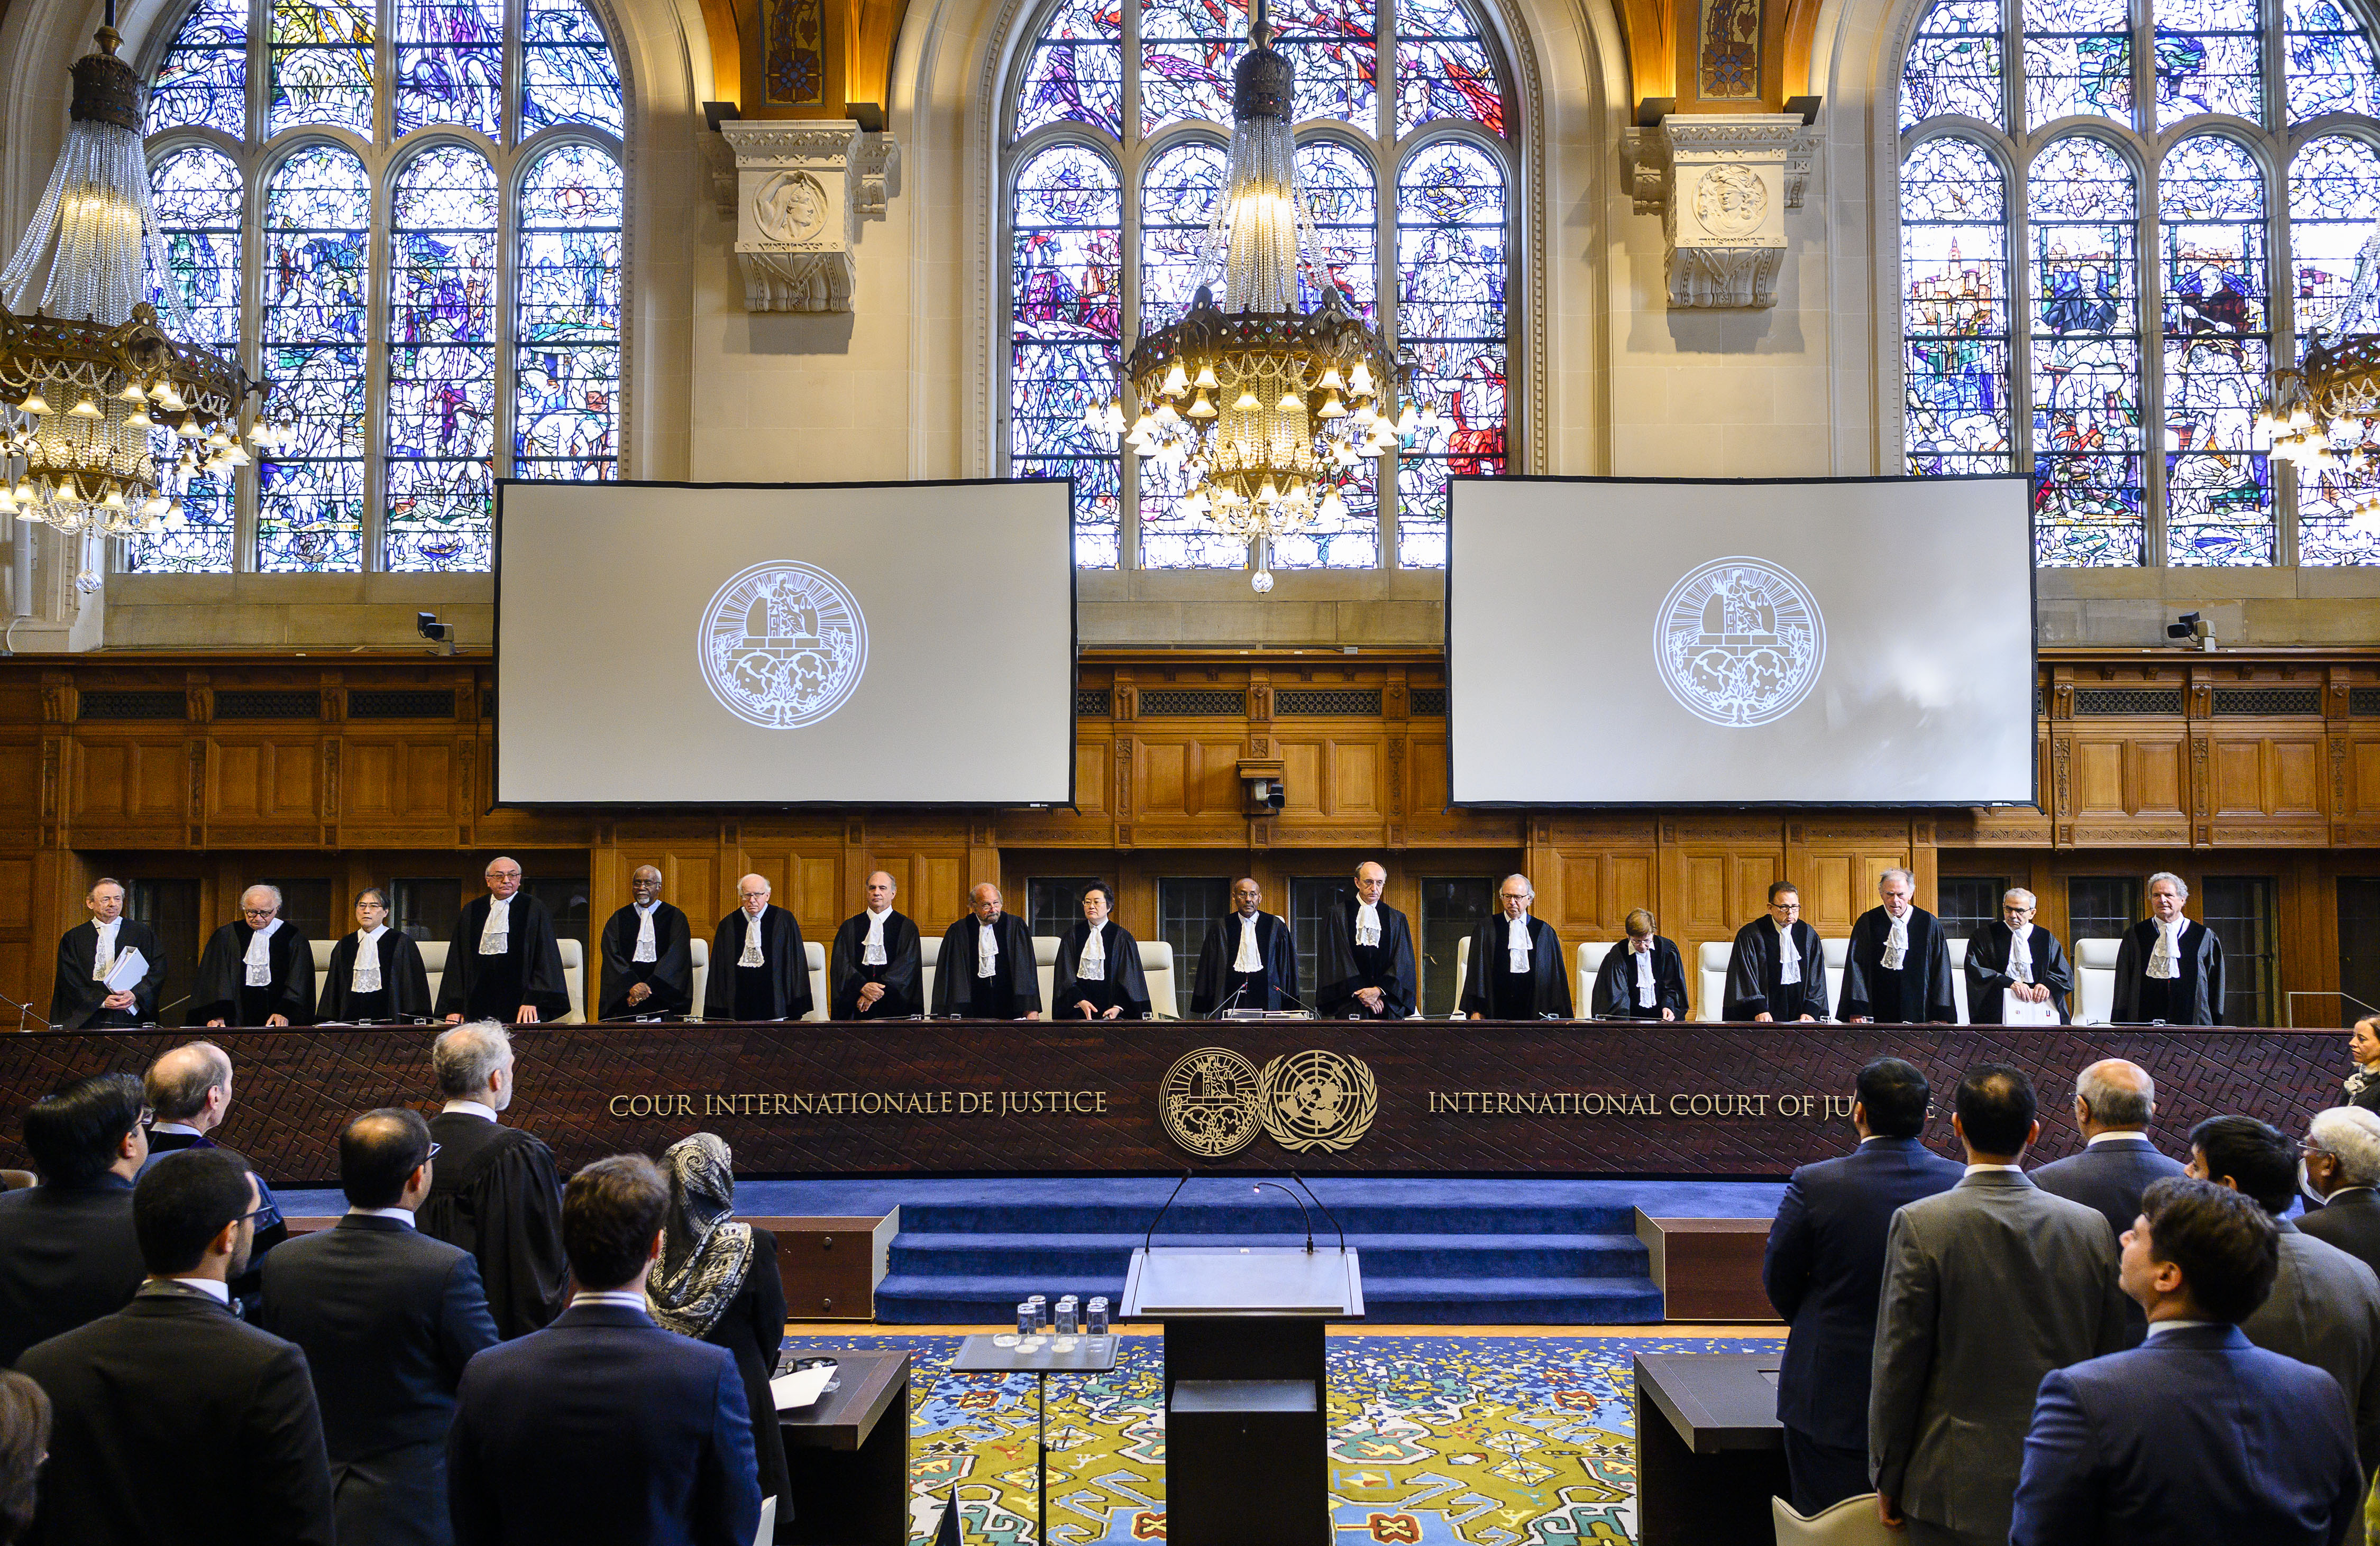 Суд между странами. Международный Уголовный трибунал (Гаага). Международный суд ООН. International Justice Court Международный суд. Суд ООН В Гааге.